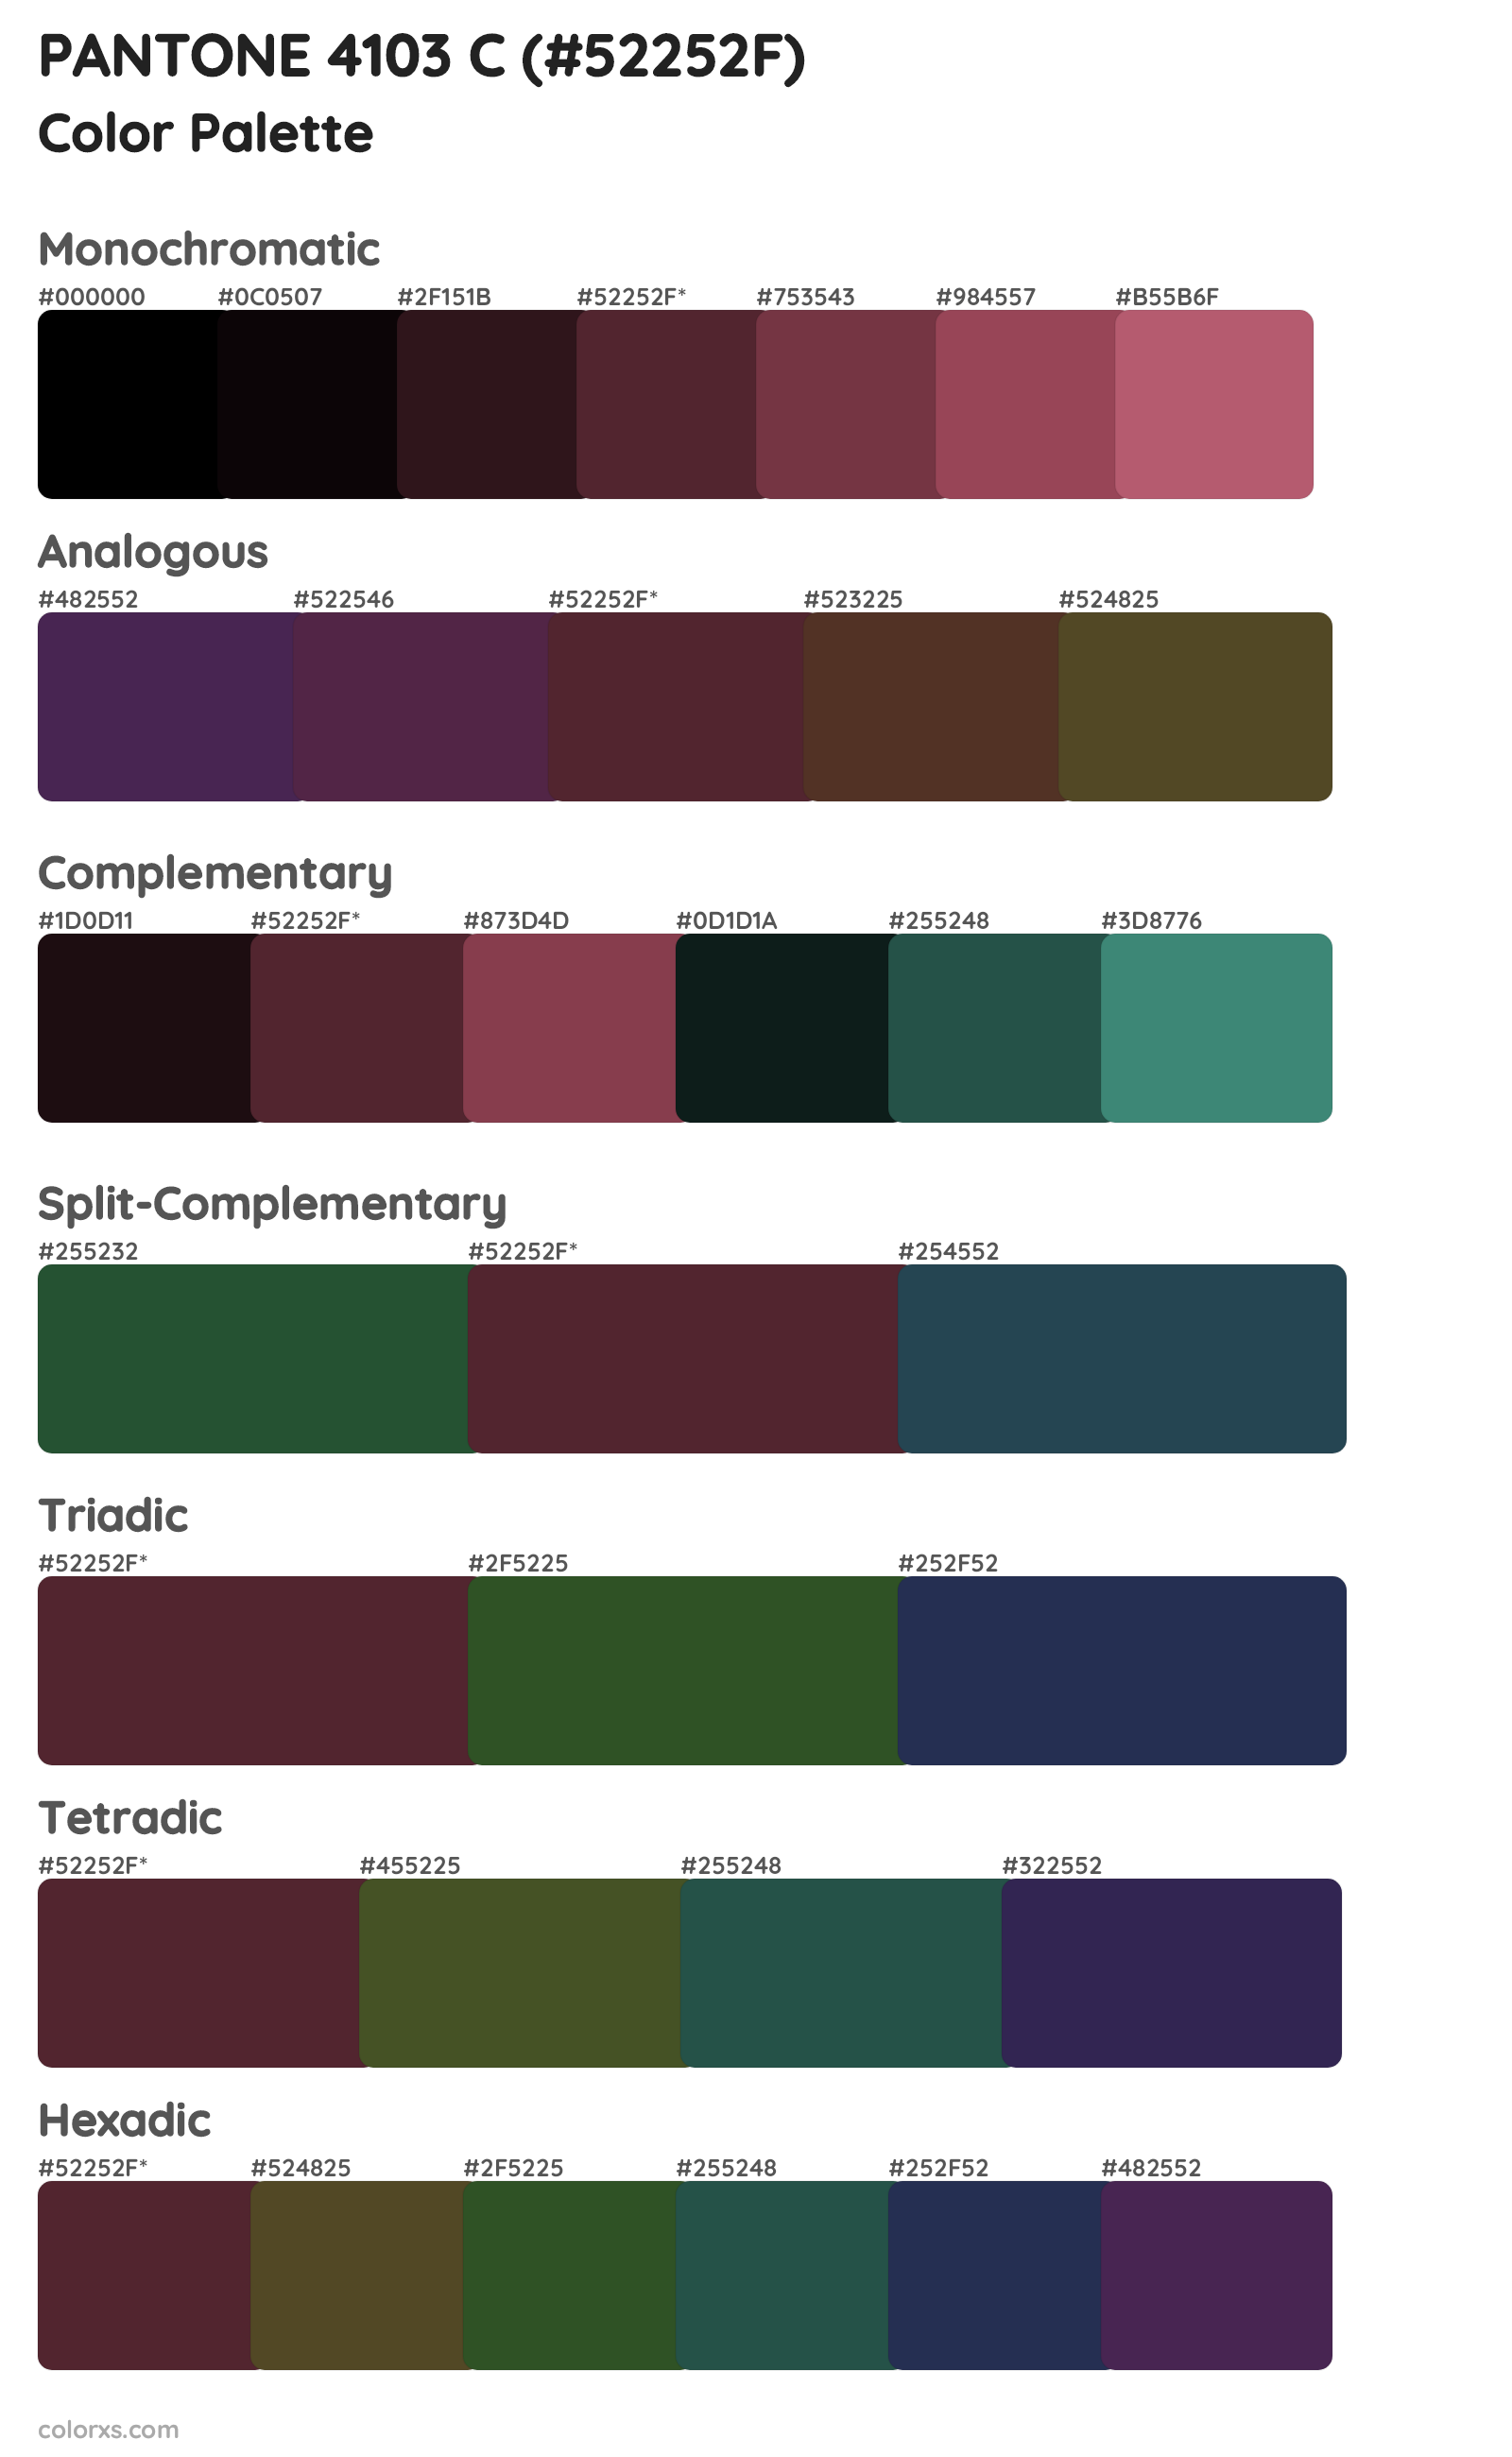 PANTONE 4103 C Color Scheme Palettes